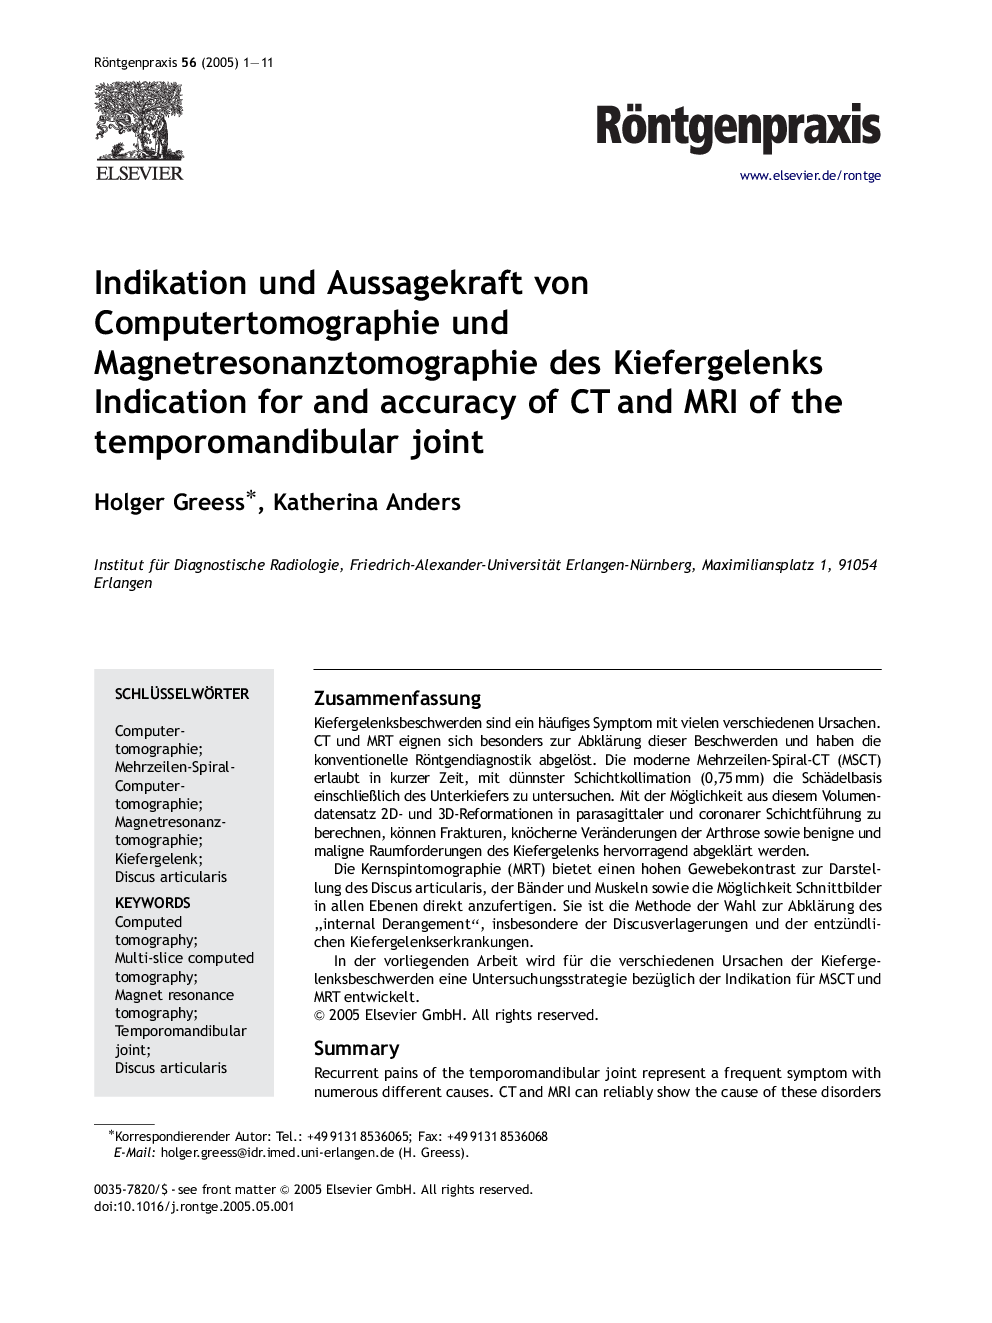 Indikation und Aussagekraft von Computertomographie und Magnetresonanztomographie des Kiefergelenks